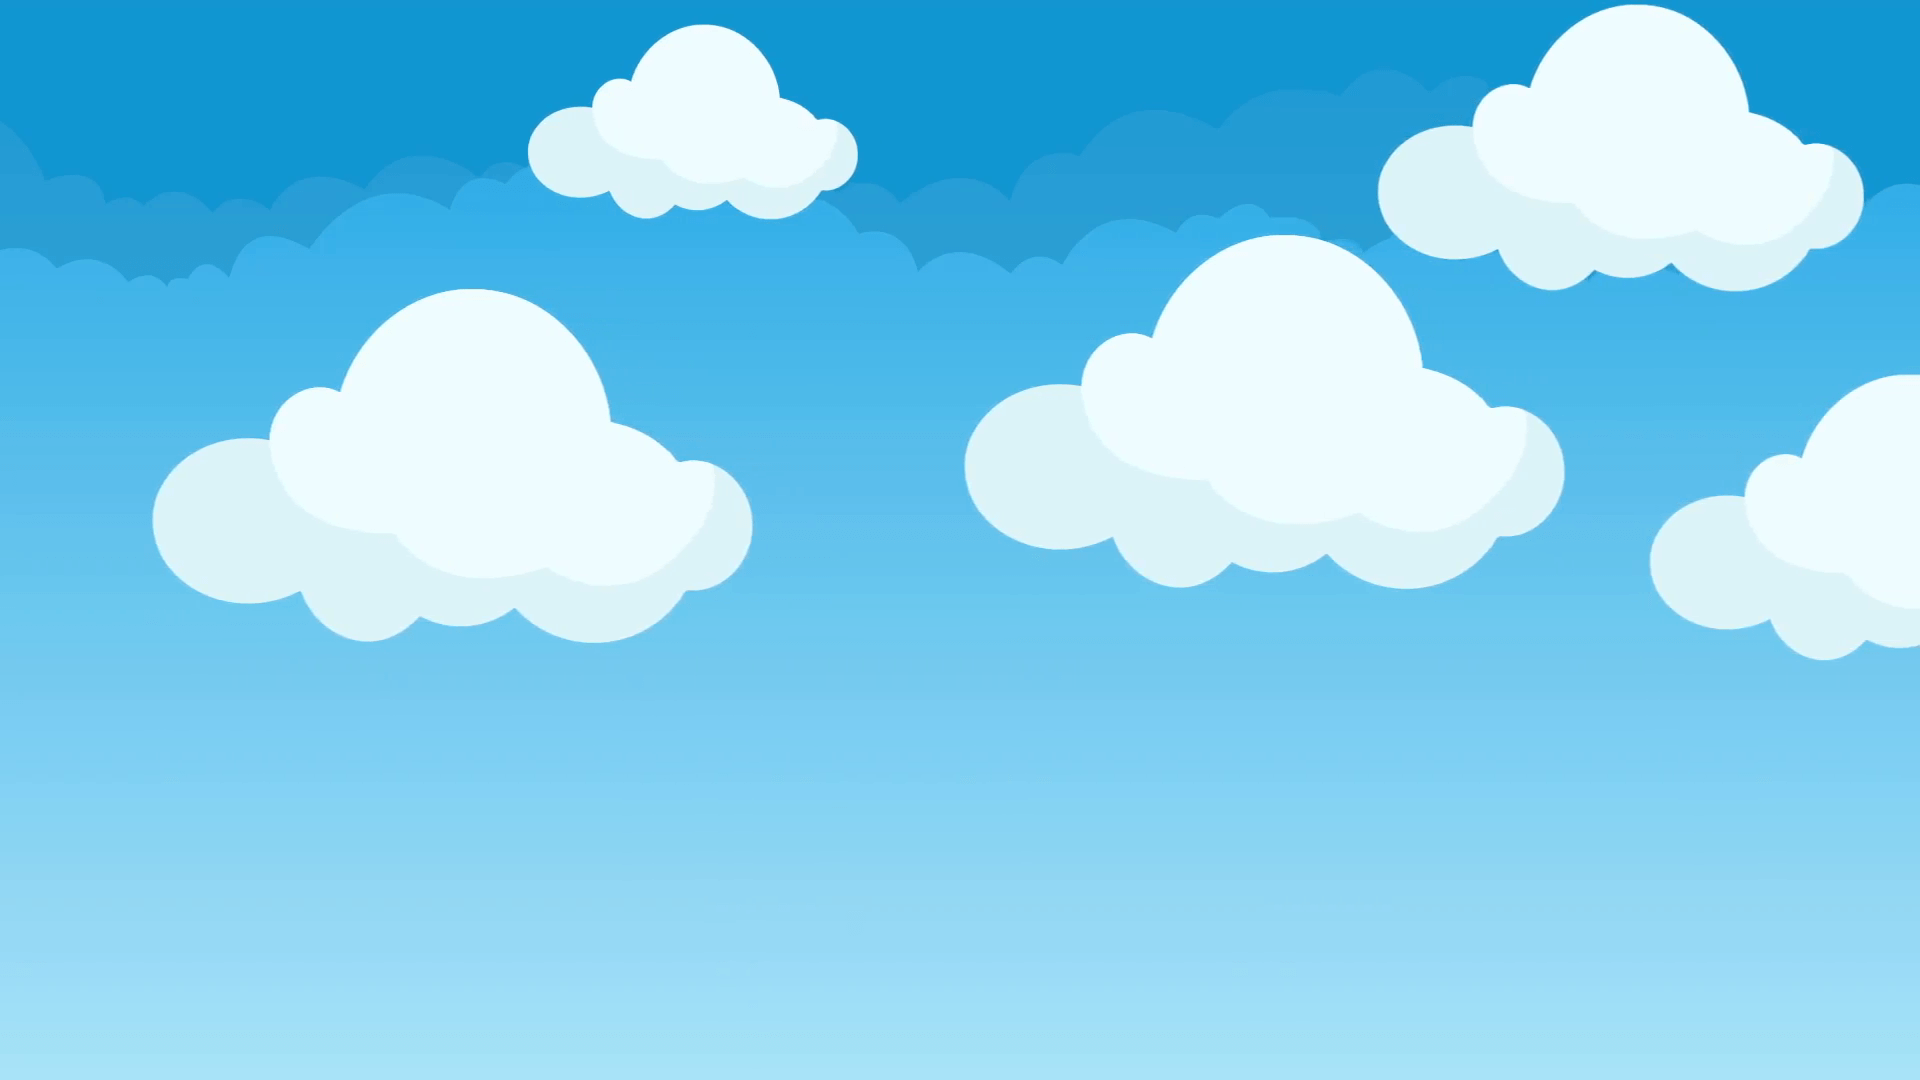 1920x1080 Phim hoạt hình đám mây dễ thương và phúng phính bay lơ lửng trên bầu trời xanh chuyển động